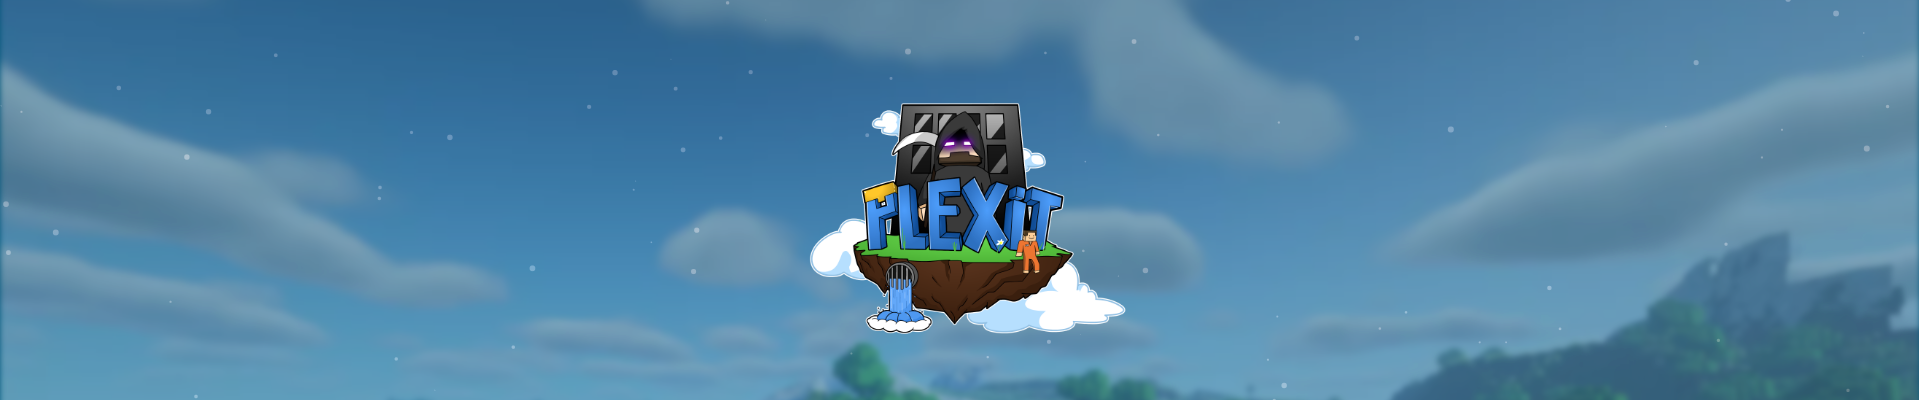 Plexit